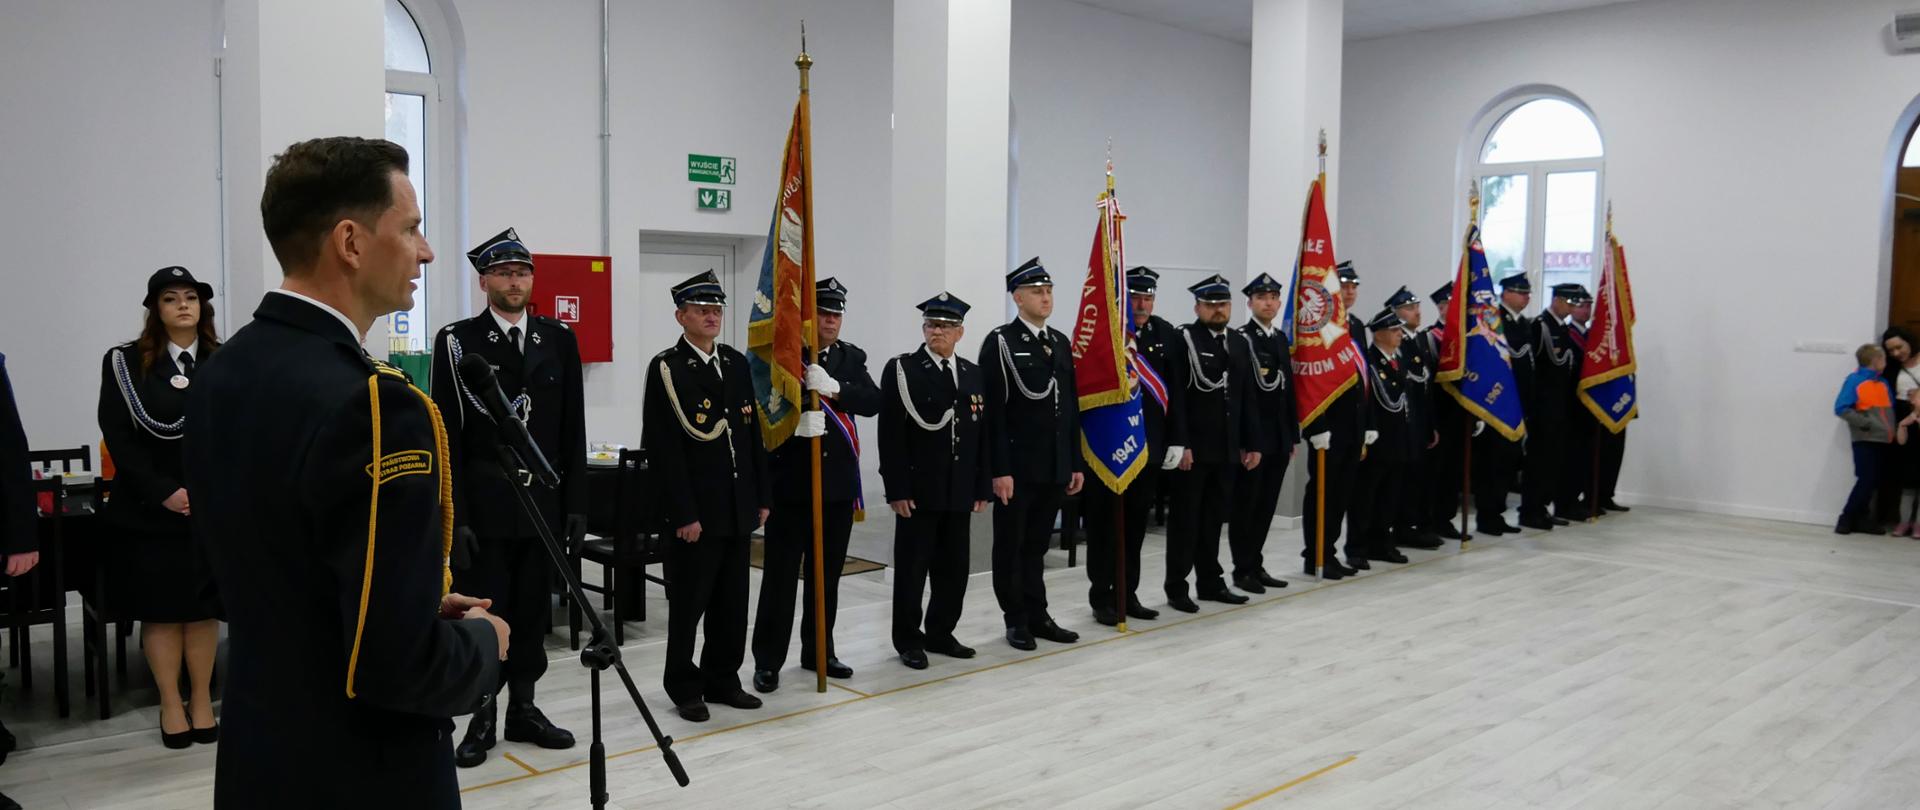 75-lecia Ochotniczej Straży Pożarnej w Niwicy - zastępca LKW przemawia na pierwszym planie w tle stoja poczty sztandarowe